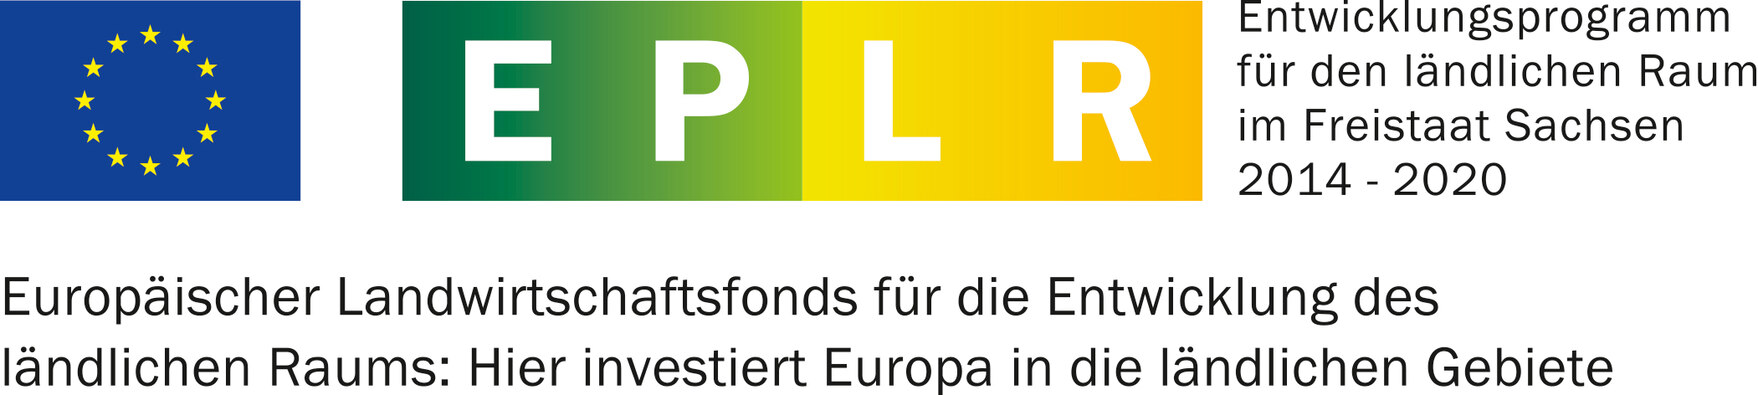 EPLR Logo des Freistaates Sachsen